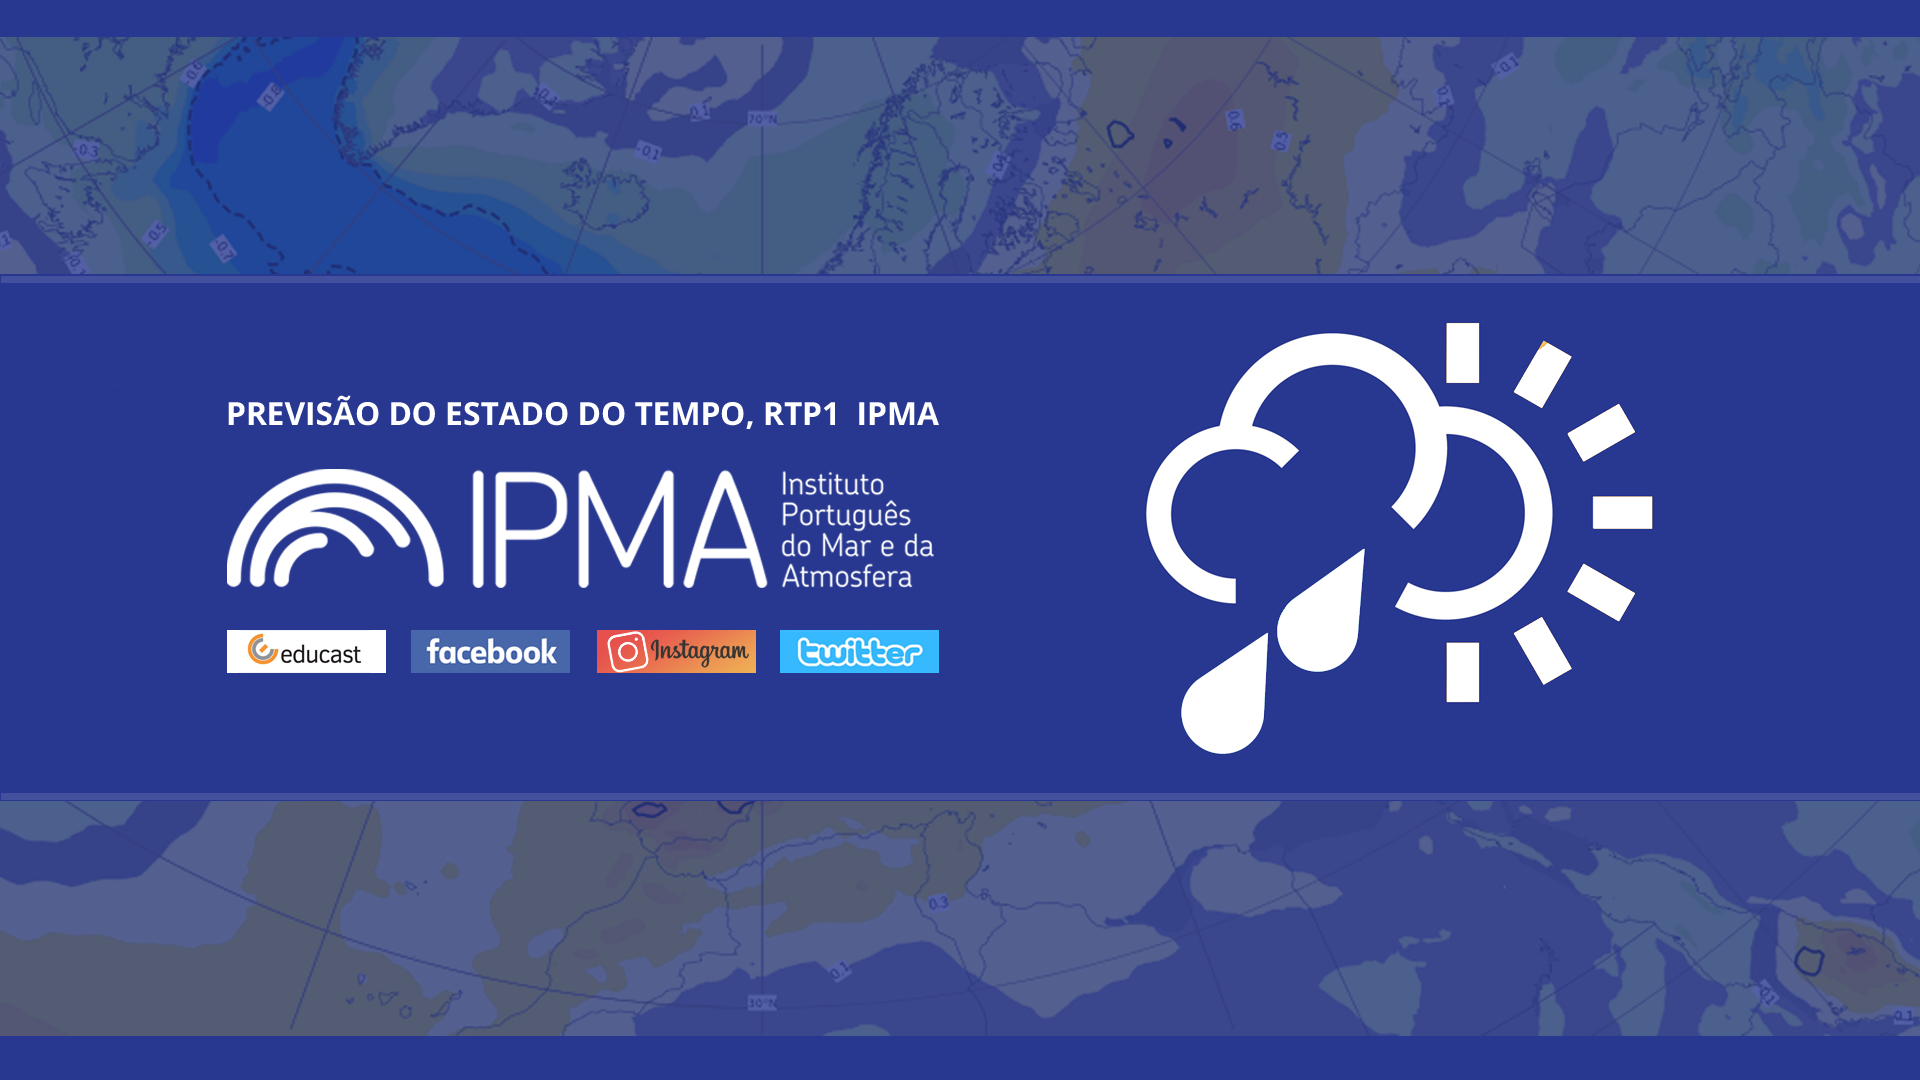  Previsão do estado do tempo, RTP1, 01-06-2022, IPMA.